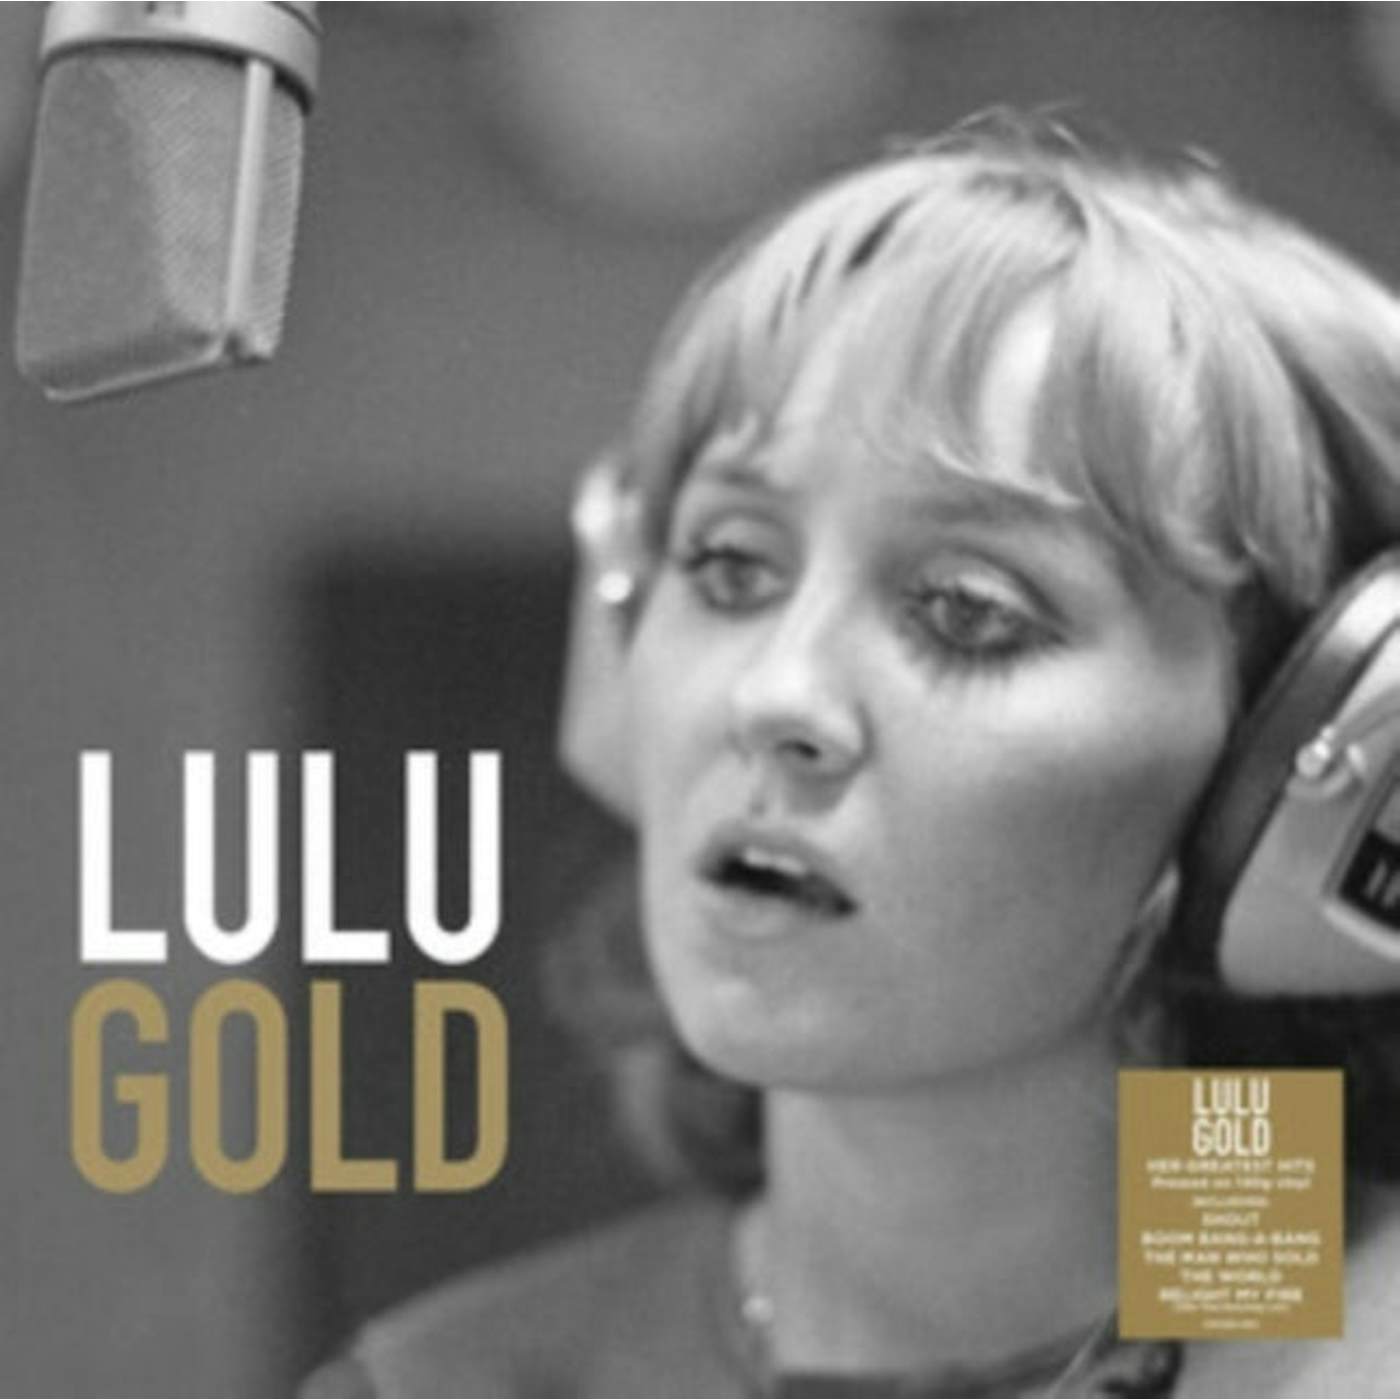 Lulu LP Vinyl Record - Gold